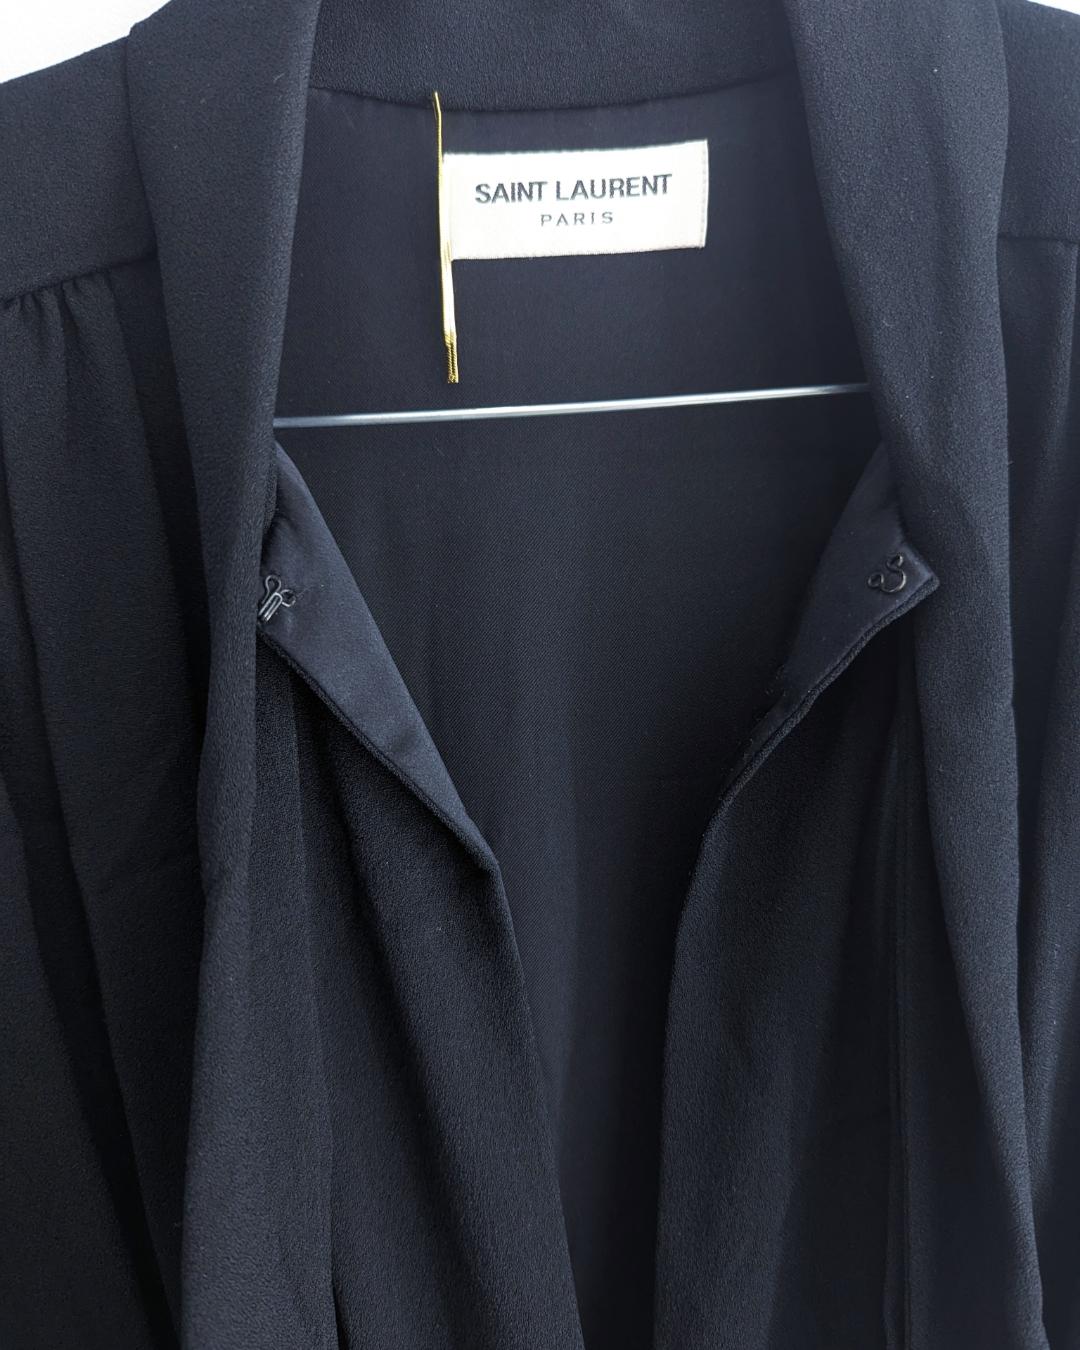 Saint Laurent F/W 2018 Black Dress by Anthony Vaccarello présente un col lavallière à nouer.

. Découpe le long du col de la poitrine
. Jupe précipitée
. fermeture à glissière invisible
. Épaules pointues

 

Convient à S-One, M.I.M.
Mesures plates